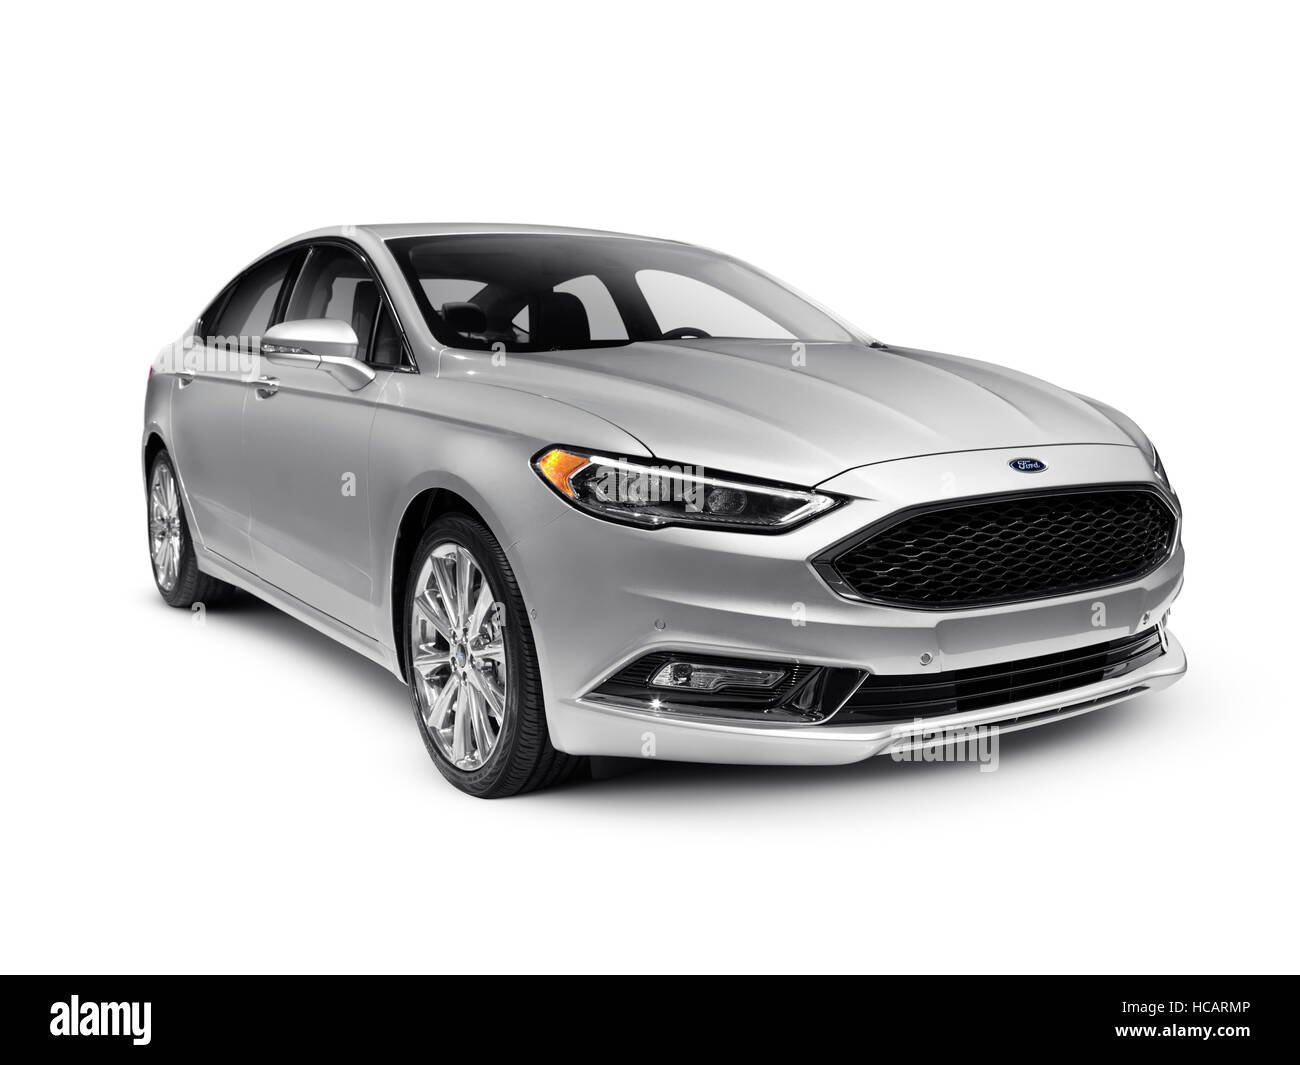 Führerschein und Ausdrucke auf MaximImages.com - Silver 2017 Ford Fusion  Mittelklasse Limousine isoliert auf weißem Hintergrund mit Clipping-Pfad  Stockfotografie - Alamy